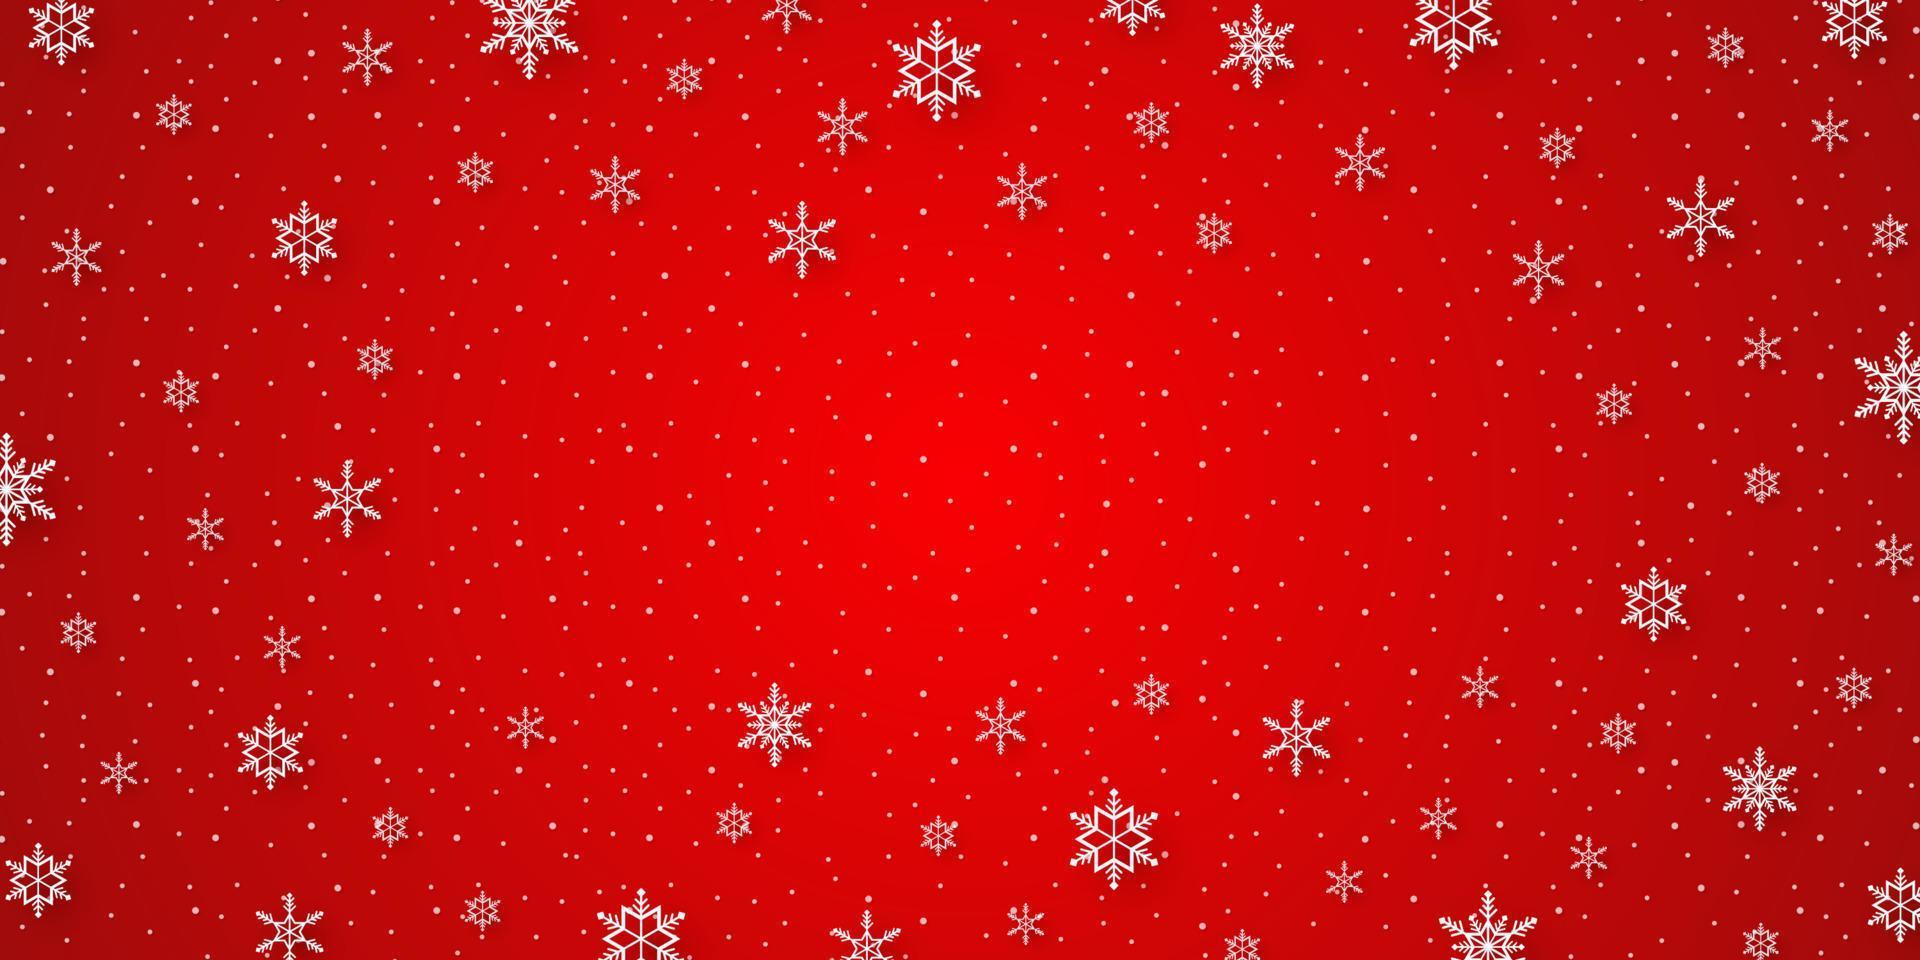 god jul, snöflingor och snöfall med röd bakgrund i papperskonststil vektor